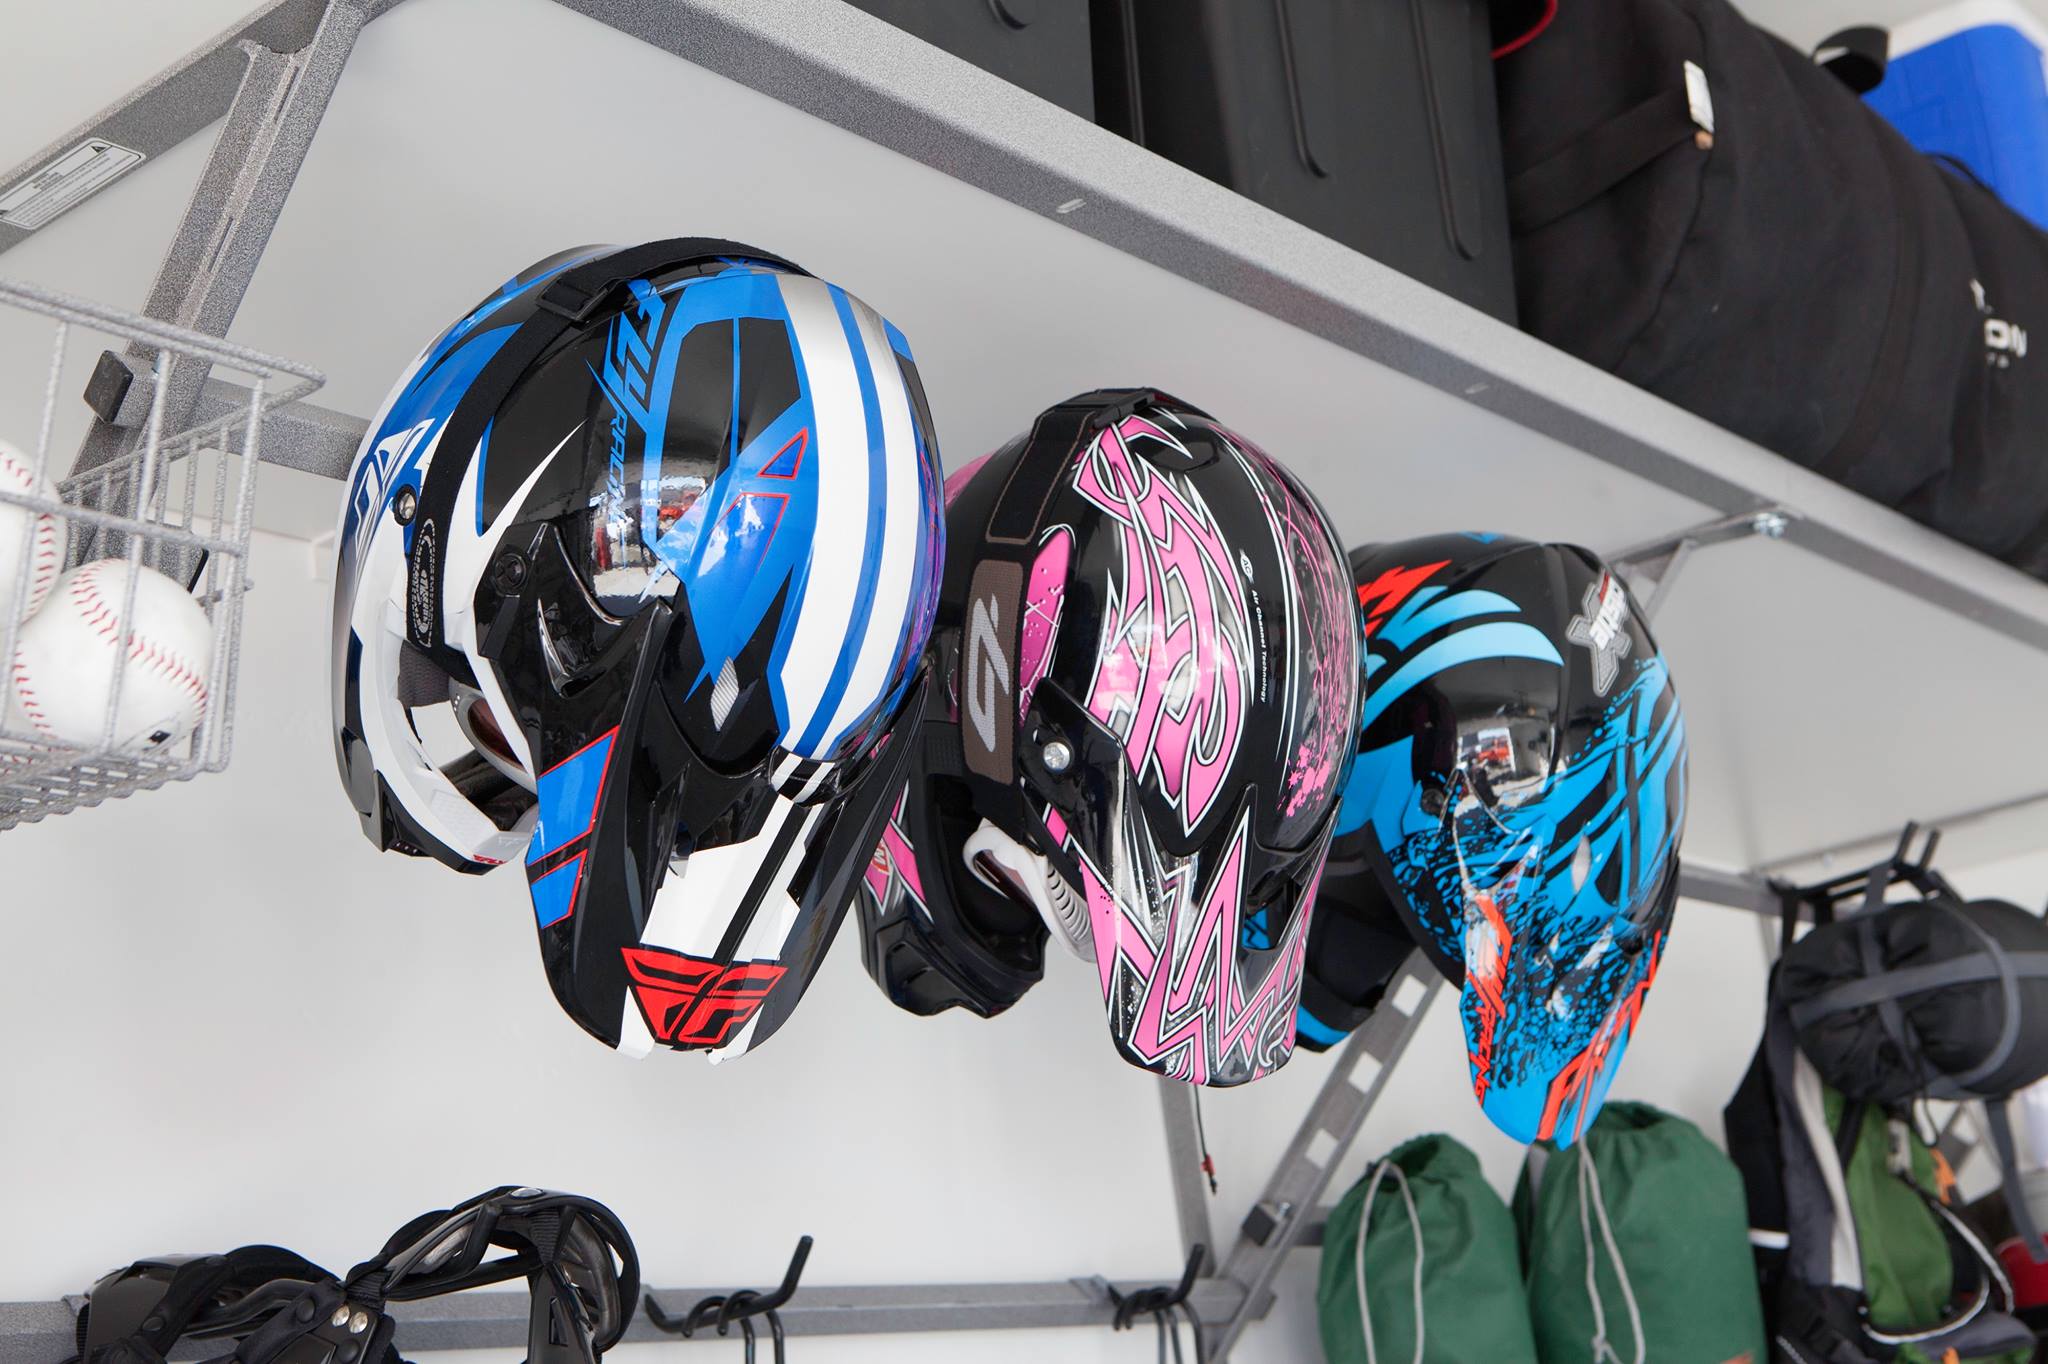 bicycle helmets on rack.jpg